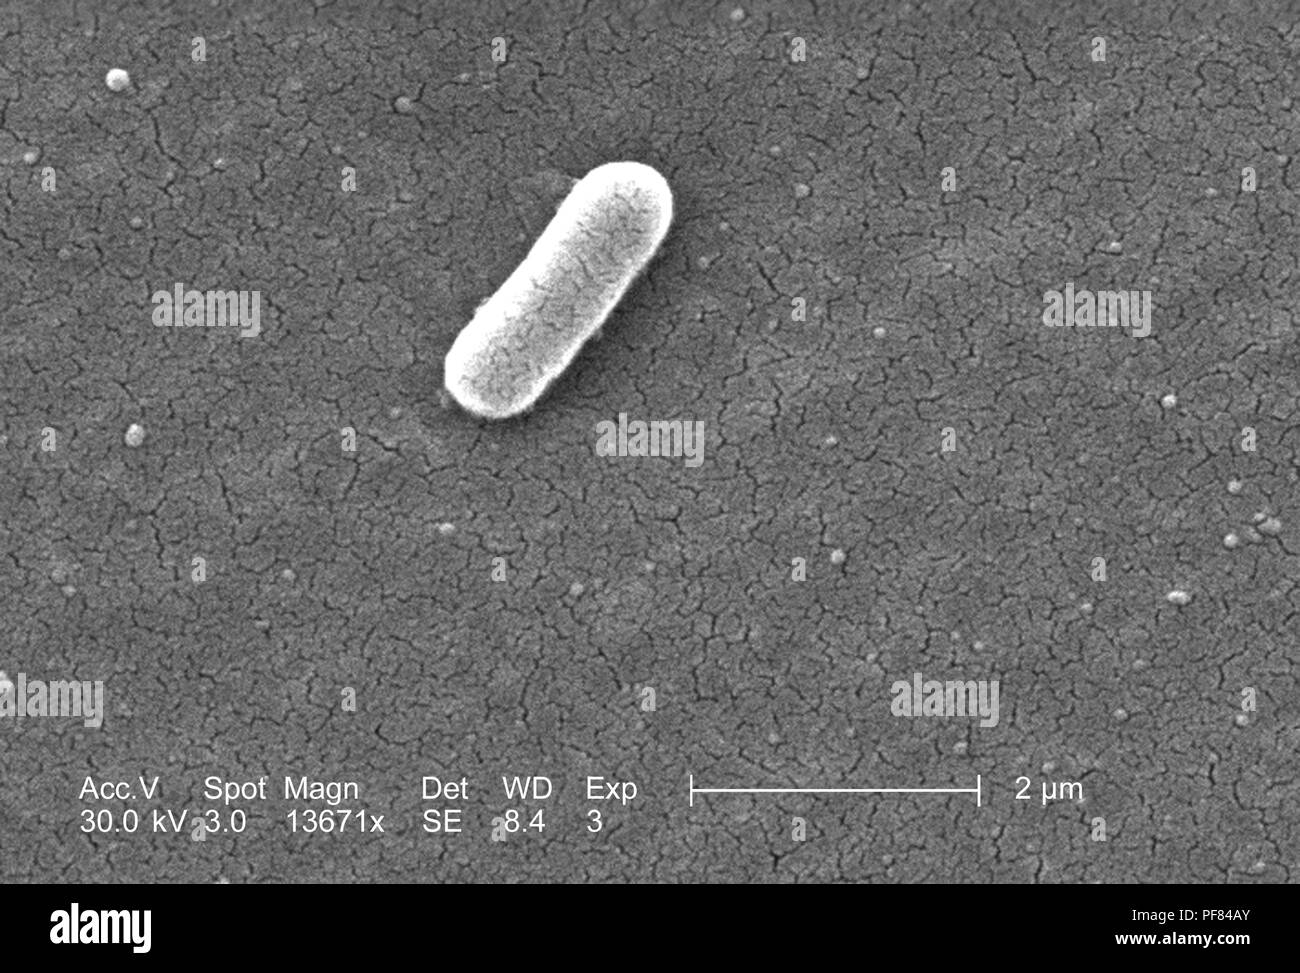 Gram-negativi Batteri Escherichia coli del ceppo O157:H7, ha rivelato nel 13671x scansione ingrandita al microscopio elettronico (SEM) immagine, 2006. Immagine cortesia di centri per il controllo delle malattie (CDC) / Nazionale Escherichia, Shigella, Vibrio unità di riferimento presso la CDC. () Foto Stock